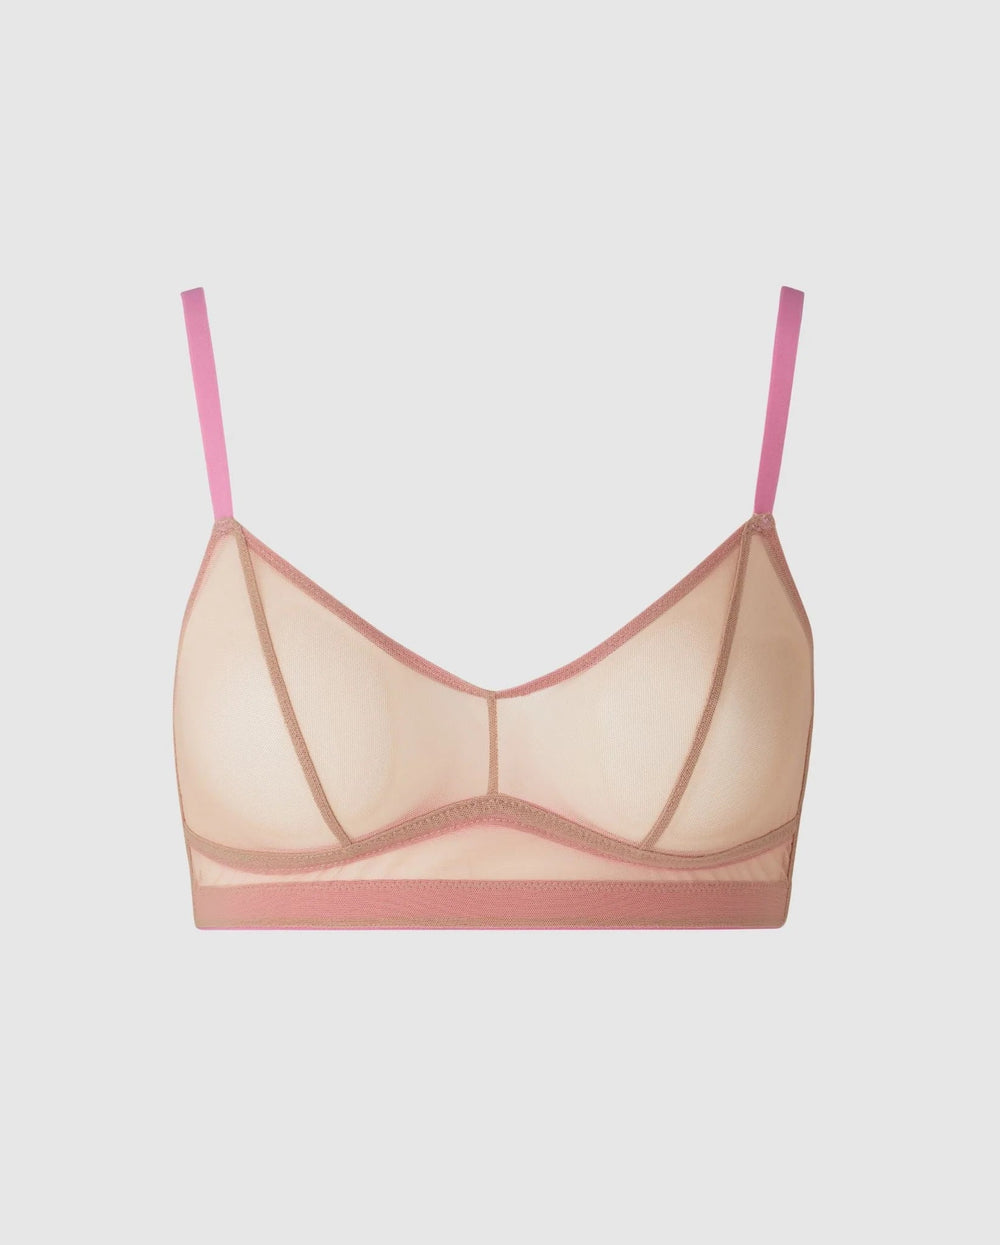 Understatement Underwear - Mesh Balconette - Candy Pink BH 